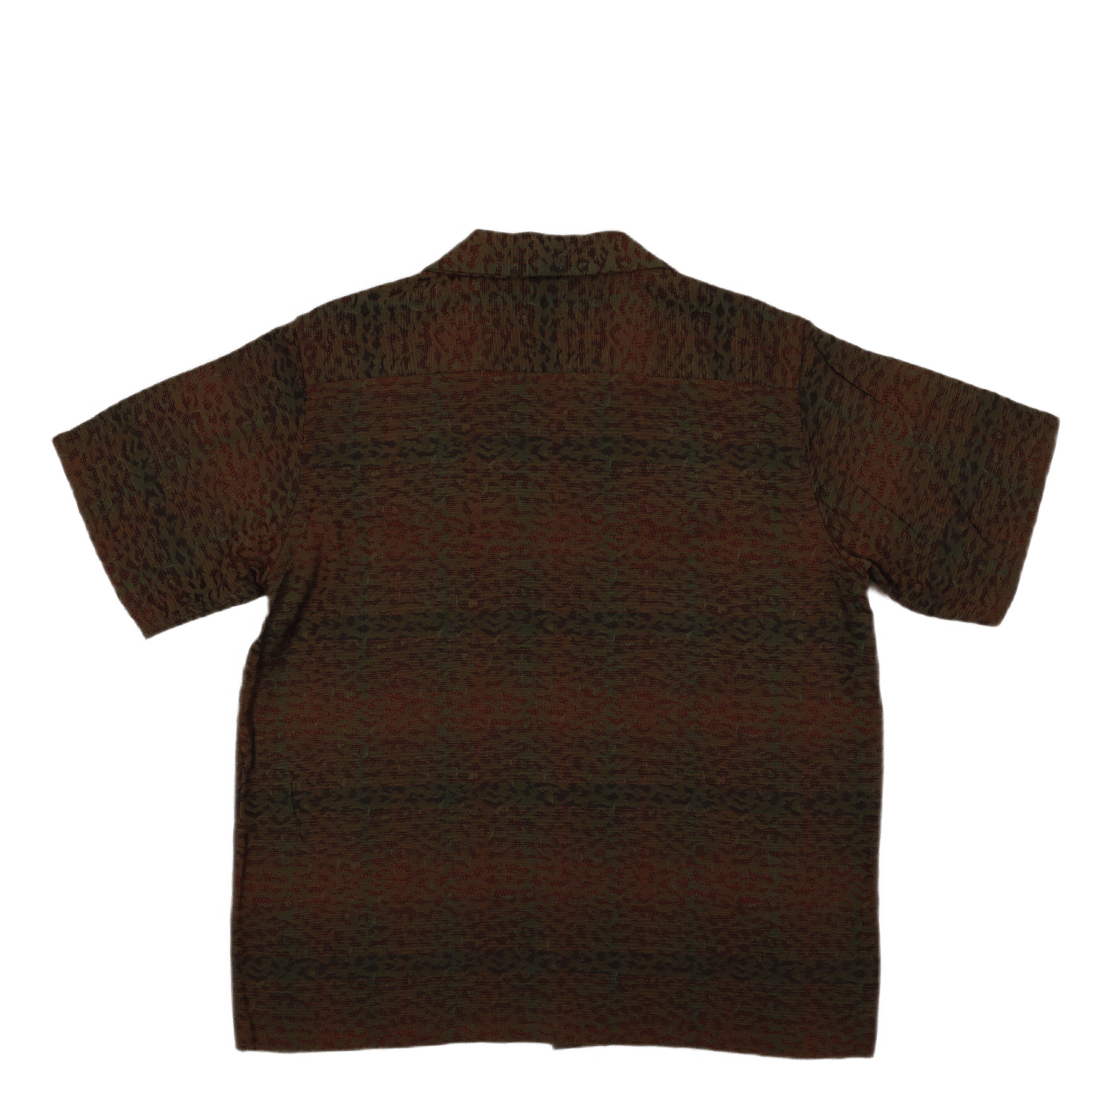 C.o.b. S/s Classic Shirt - R/w B-leopard B